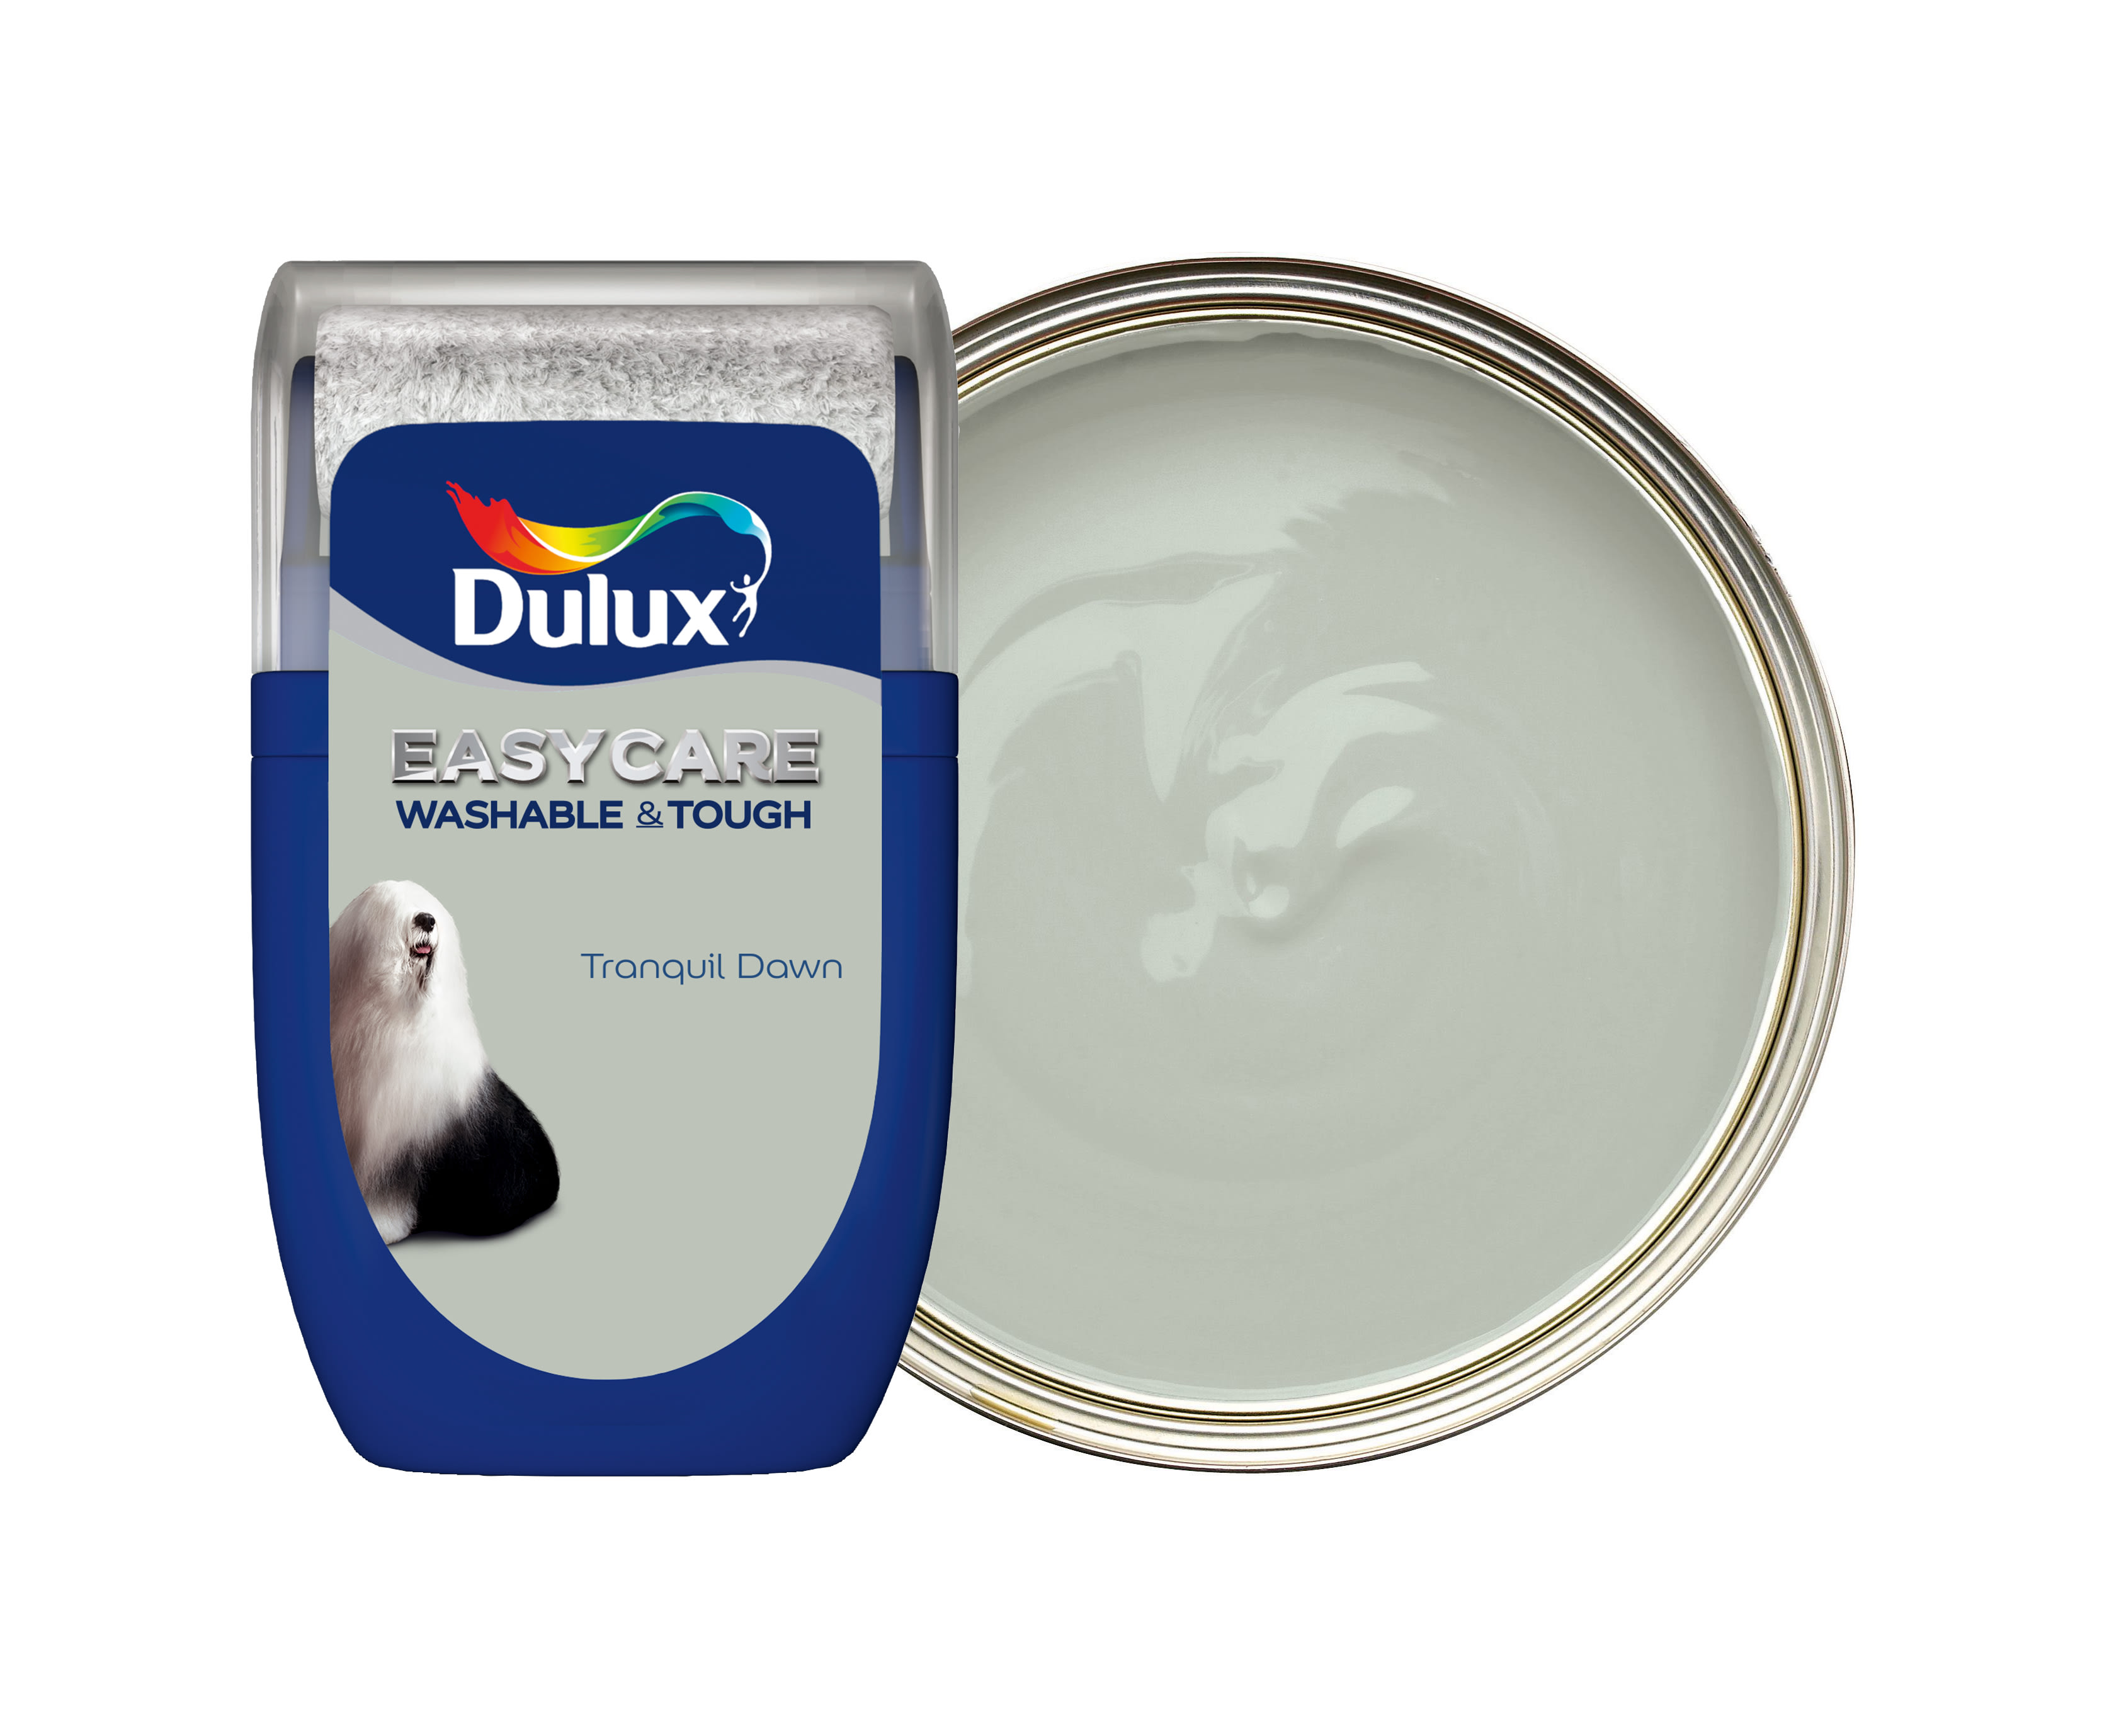 Dulux Easycare Washable & Tough Paint - Tranquil